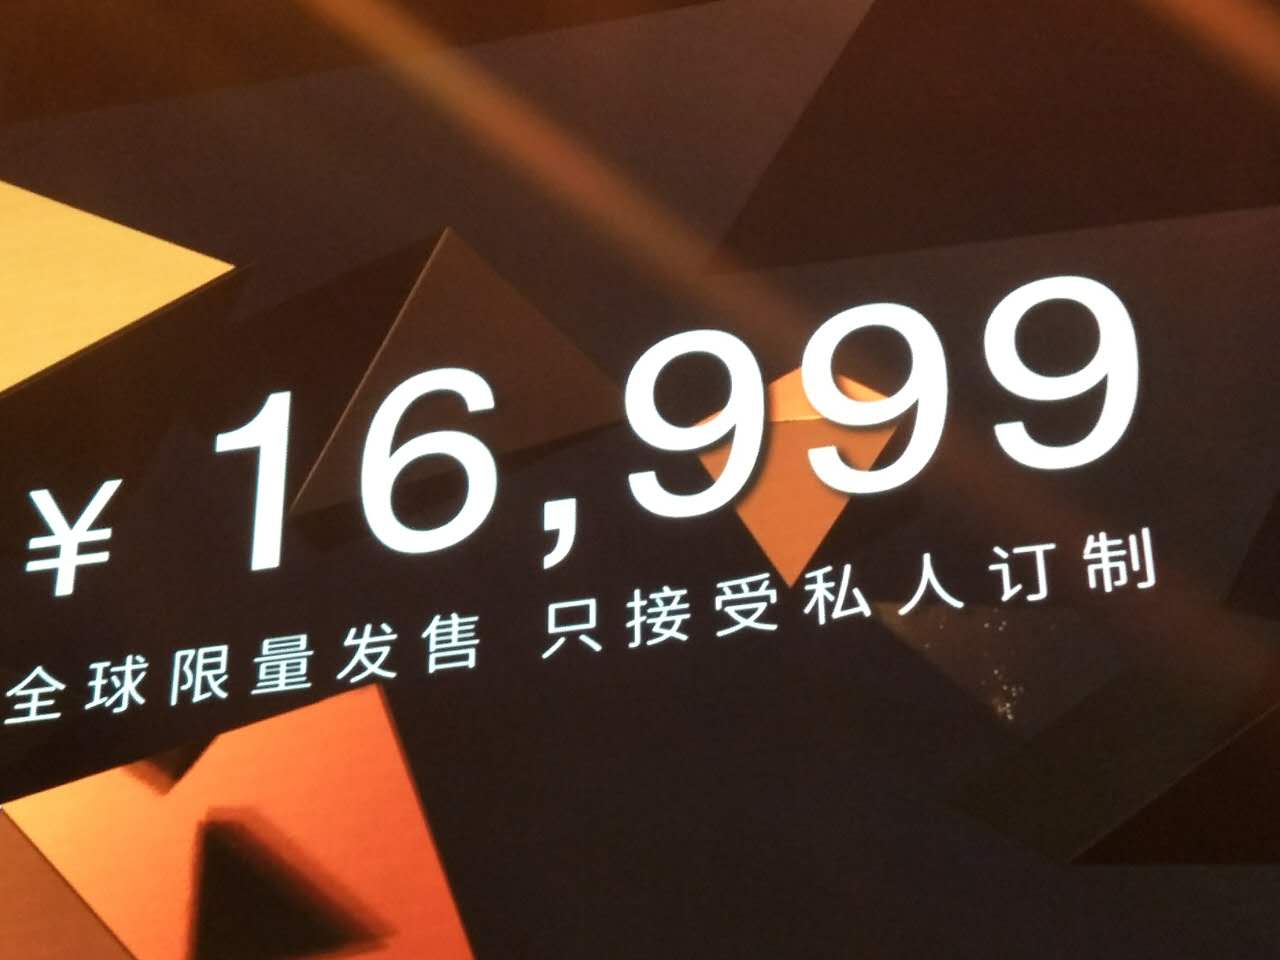 金立董事长刘立荣:M2017定价超苹果 目标销量